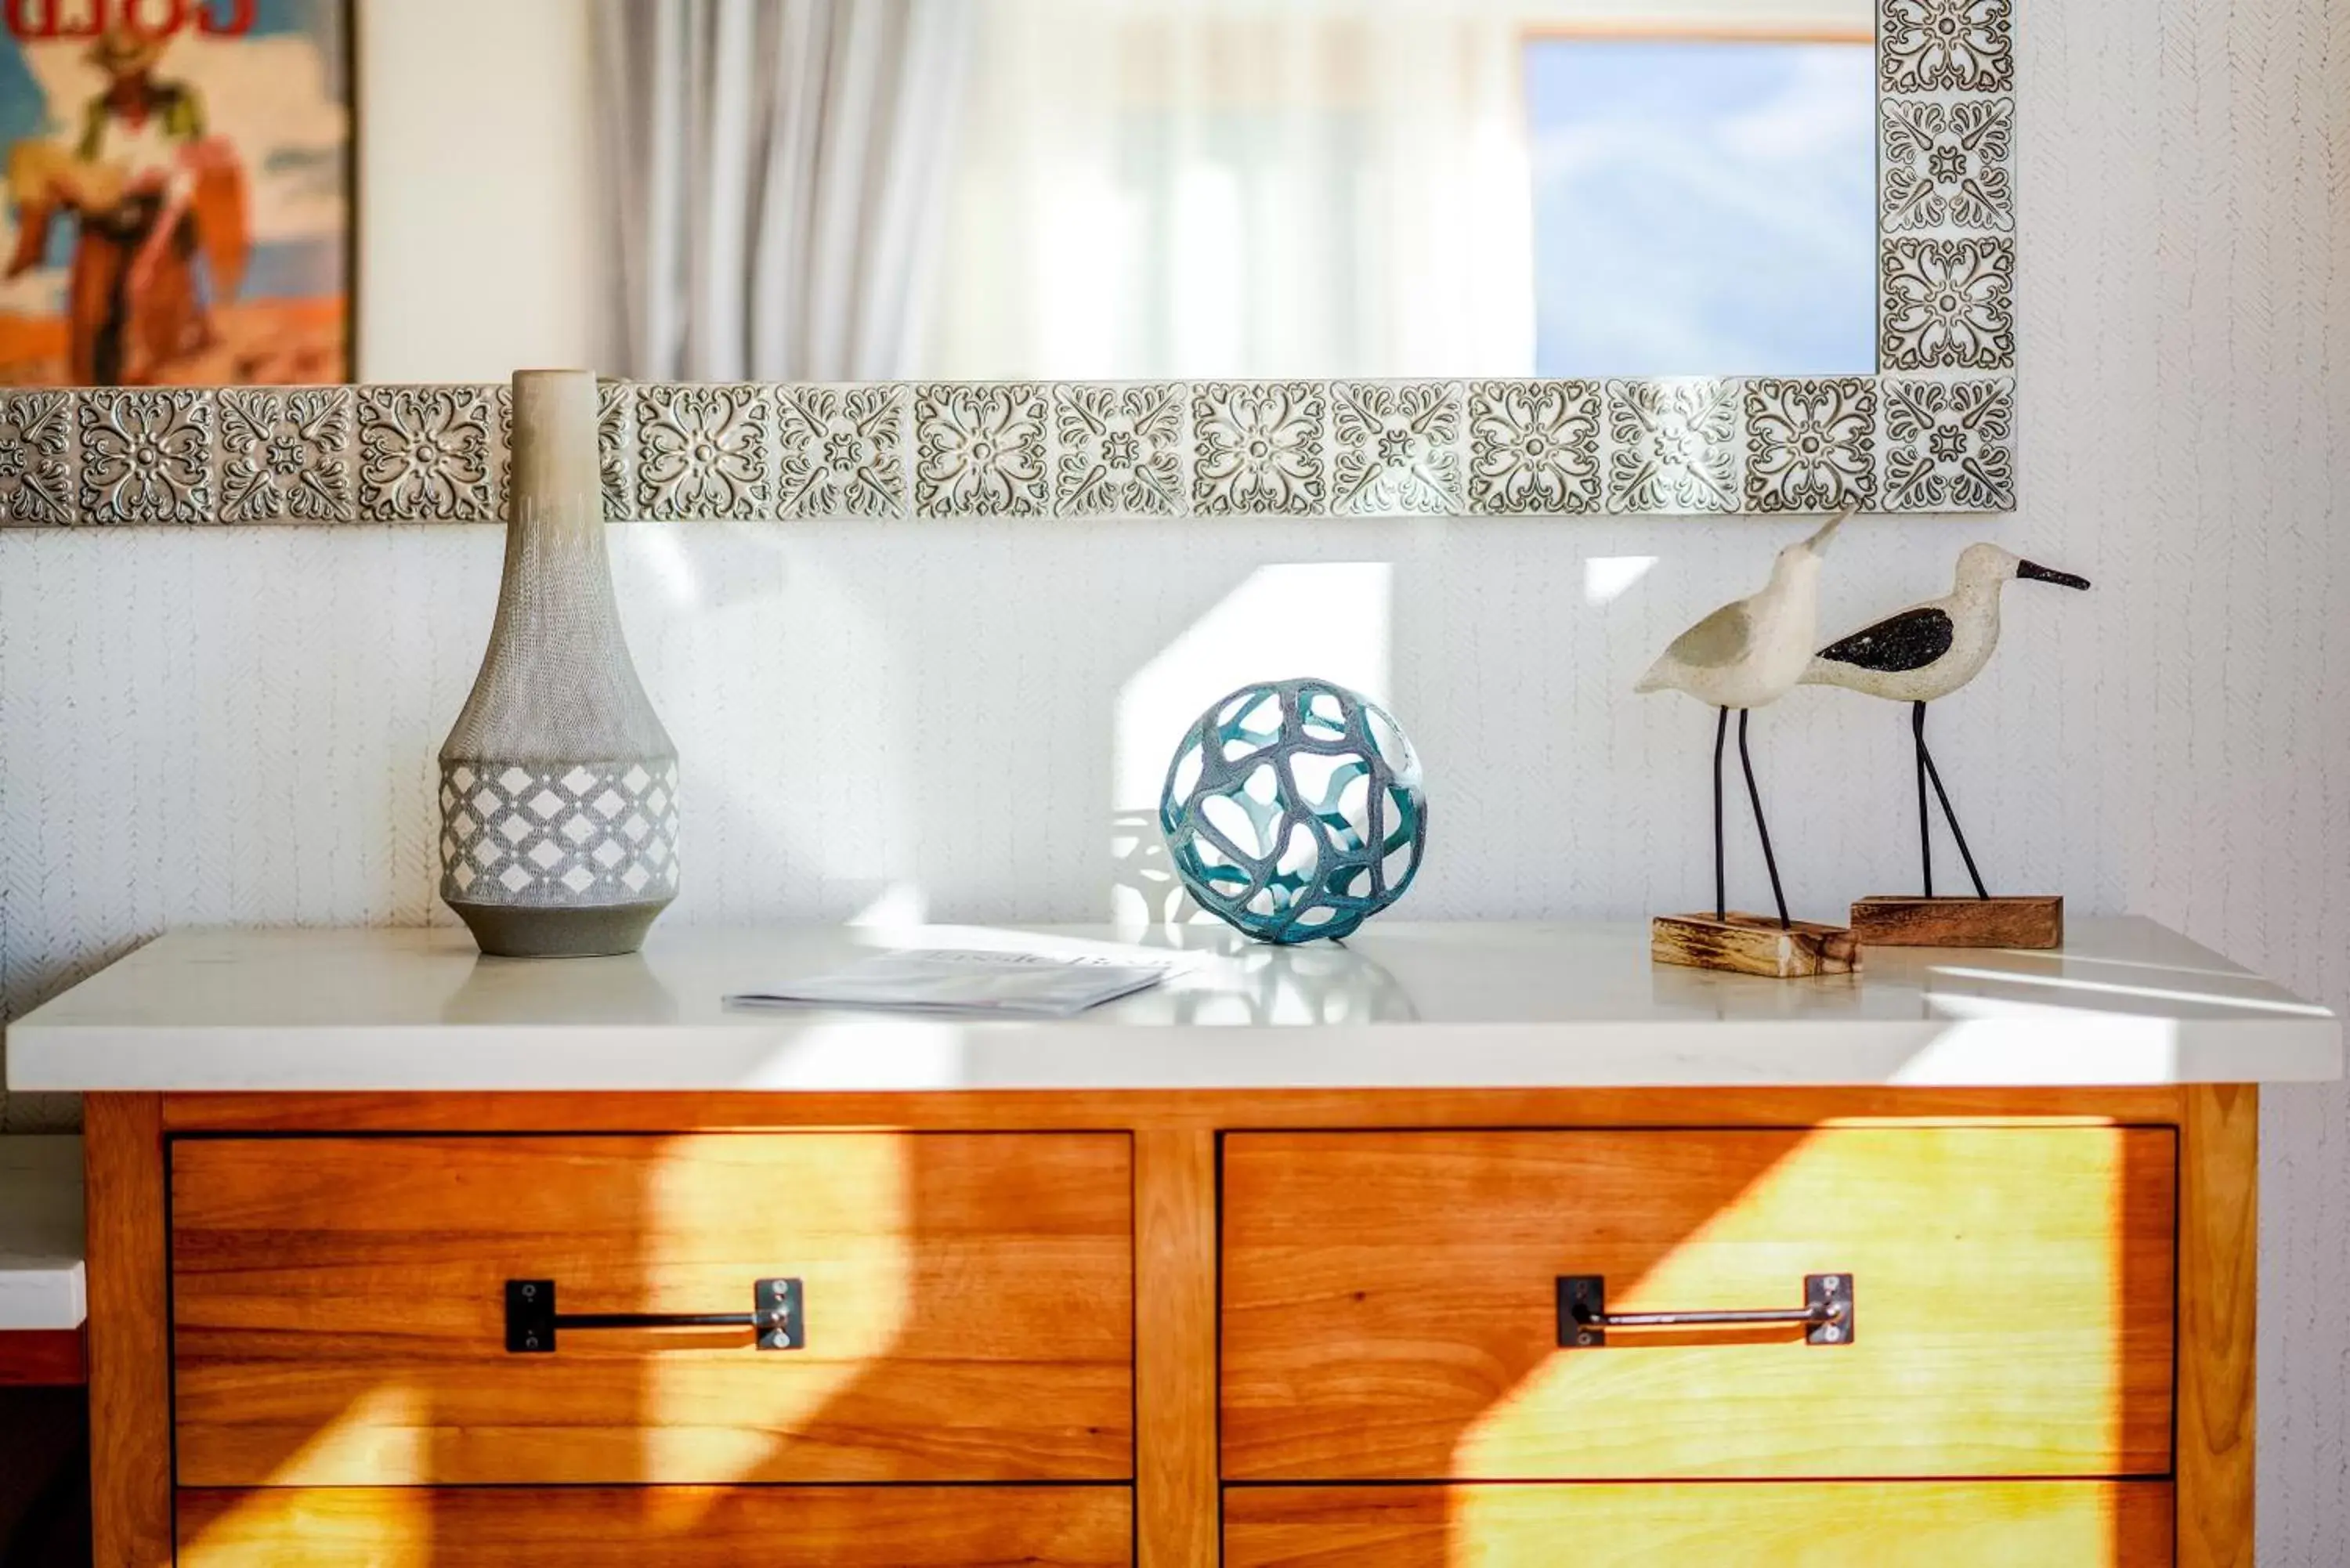 Decorative detail, Kitchen/Kitchenette in Zane Grey Pueblo Hotel